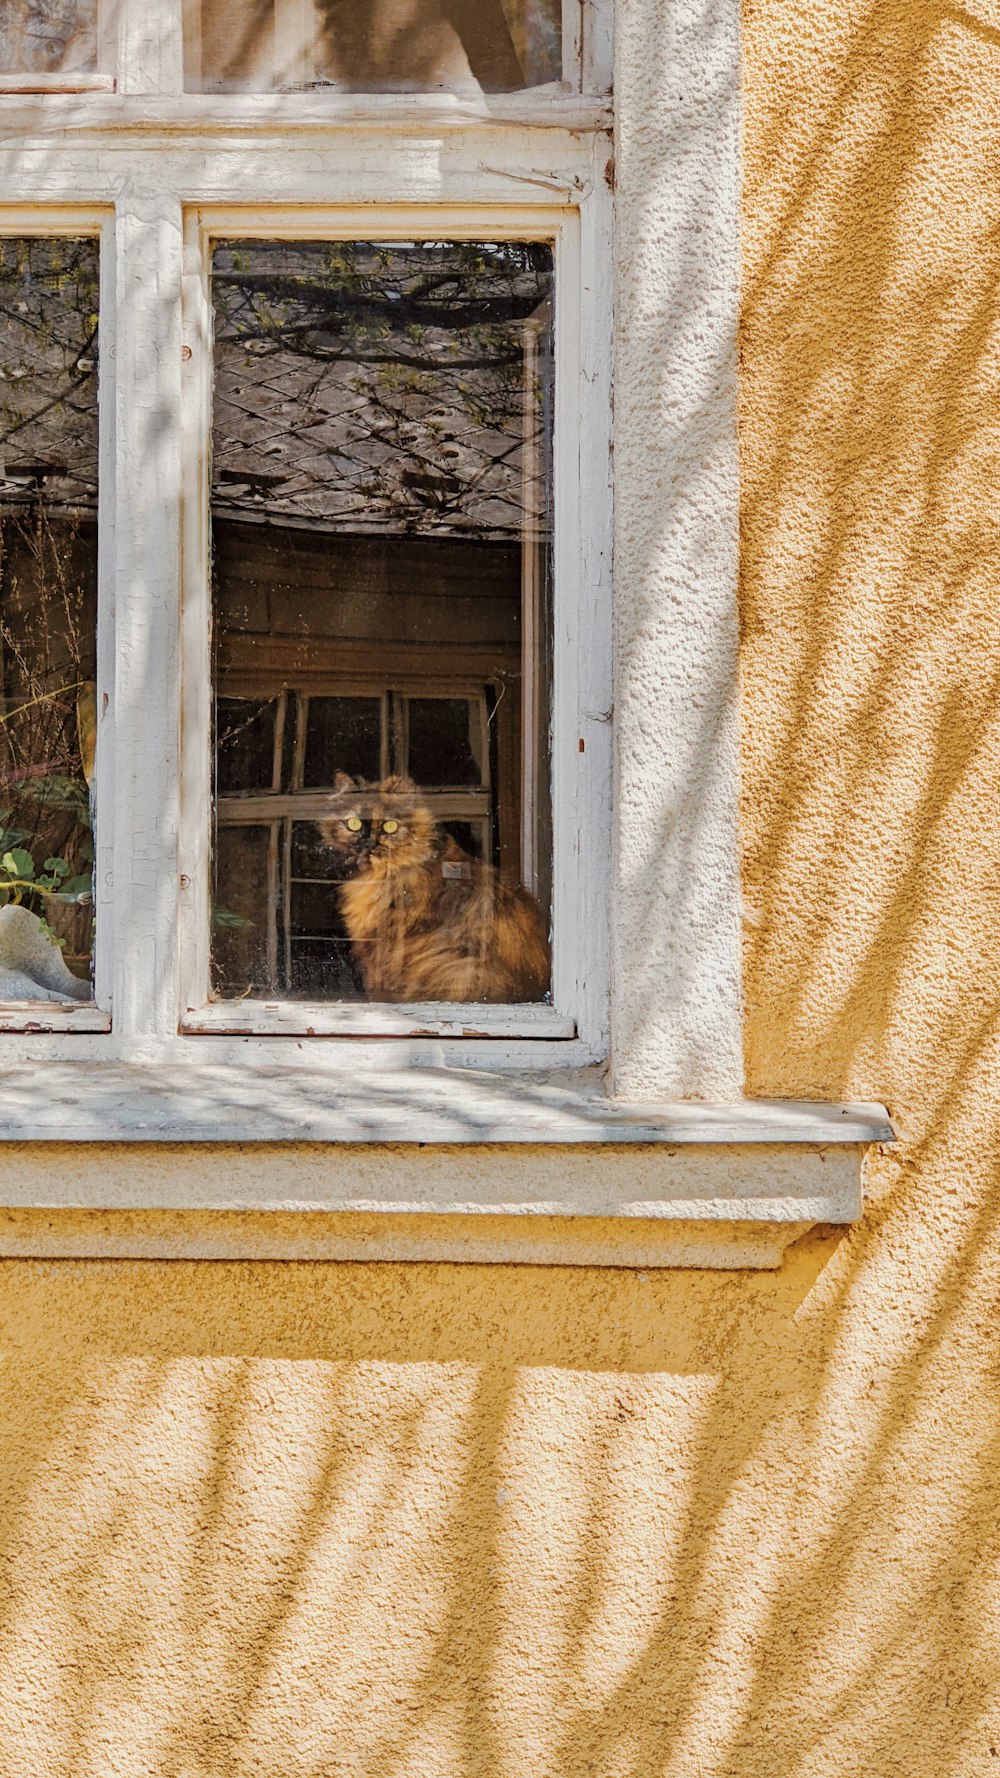 a cat sits in a window